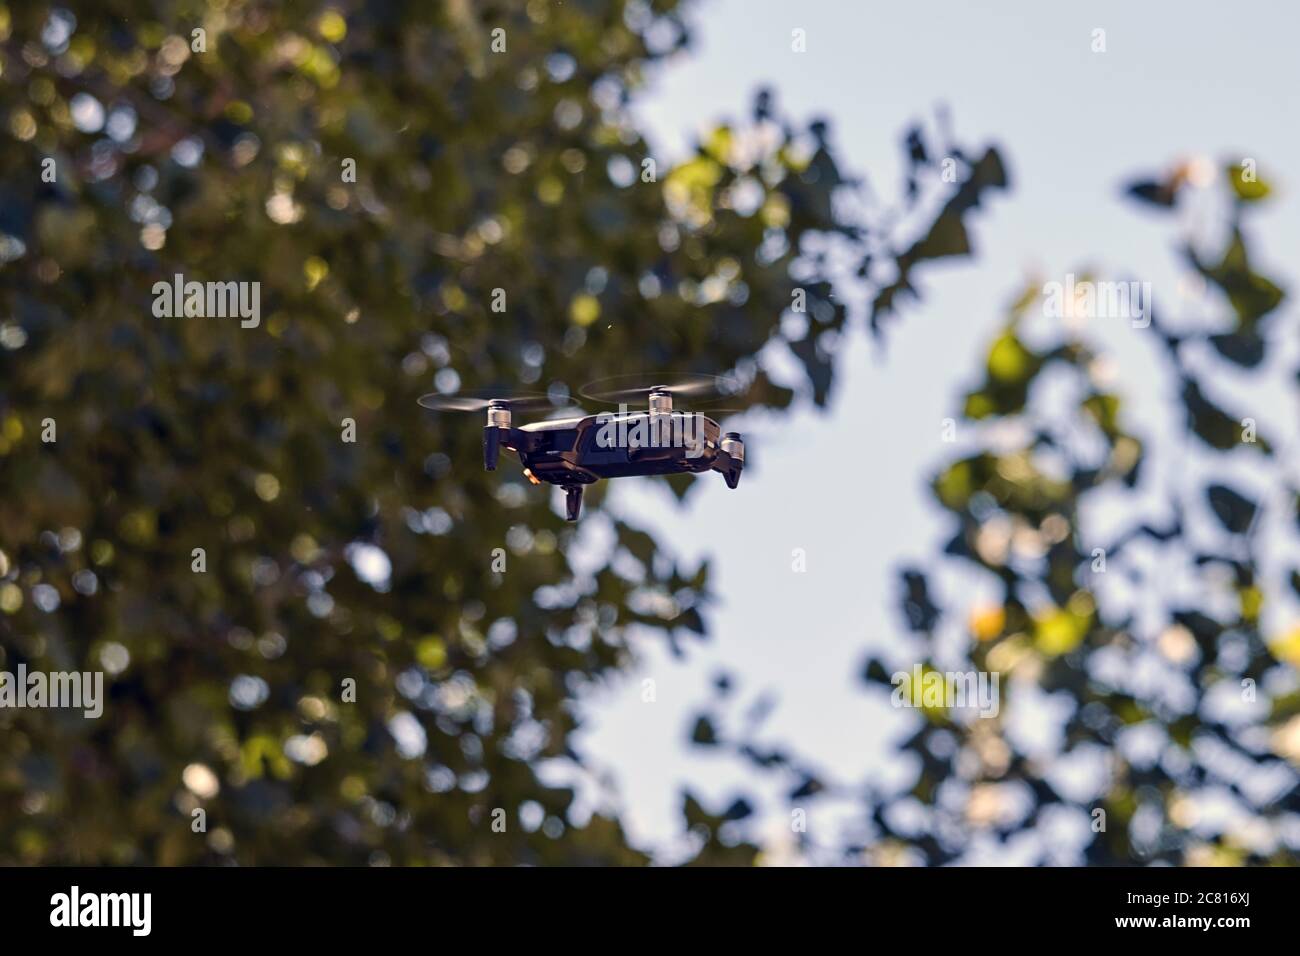 Dron,vehículo aéreo no tripulado Stock Photo